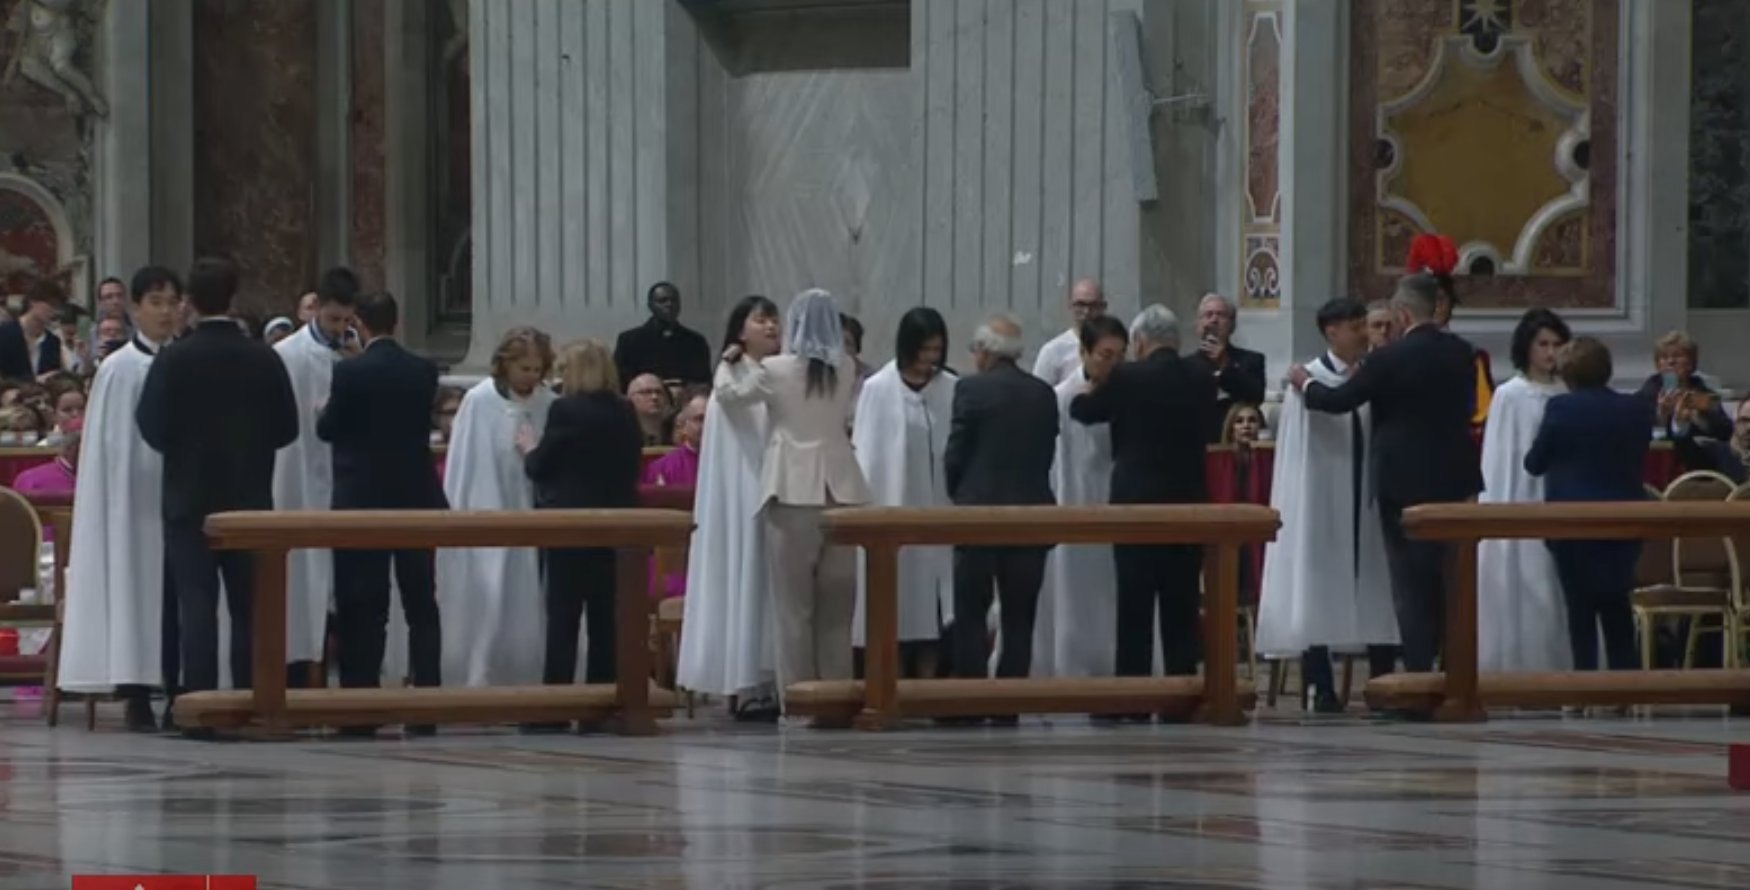 Las ocho personas bautizadas por el Papa reciben las vestiduras blancas.